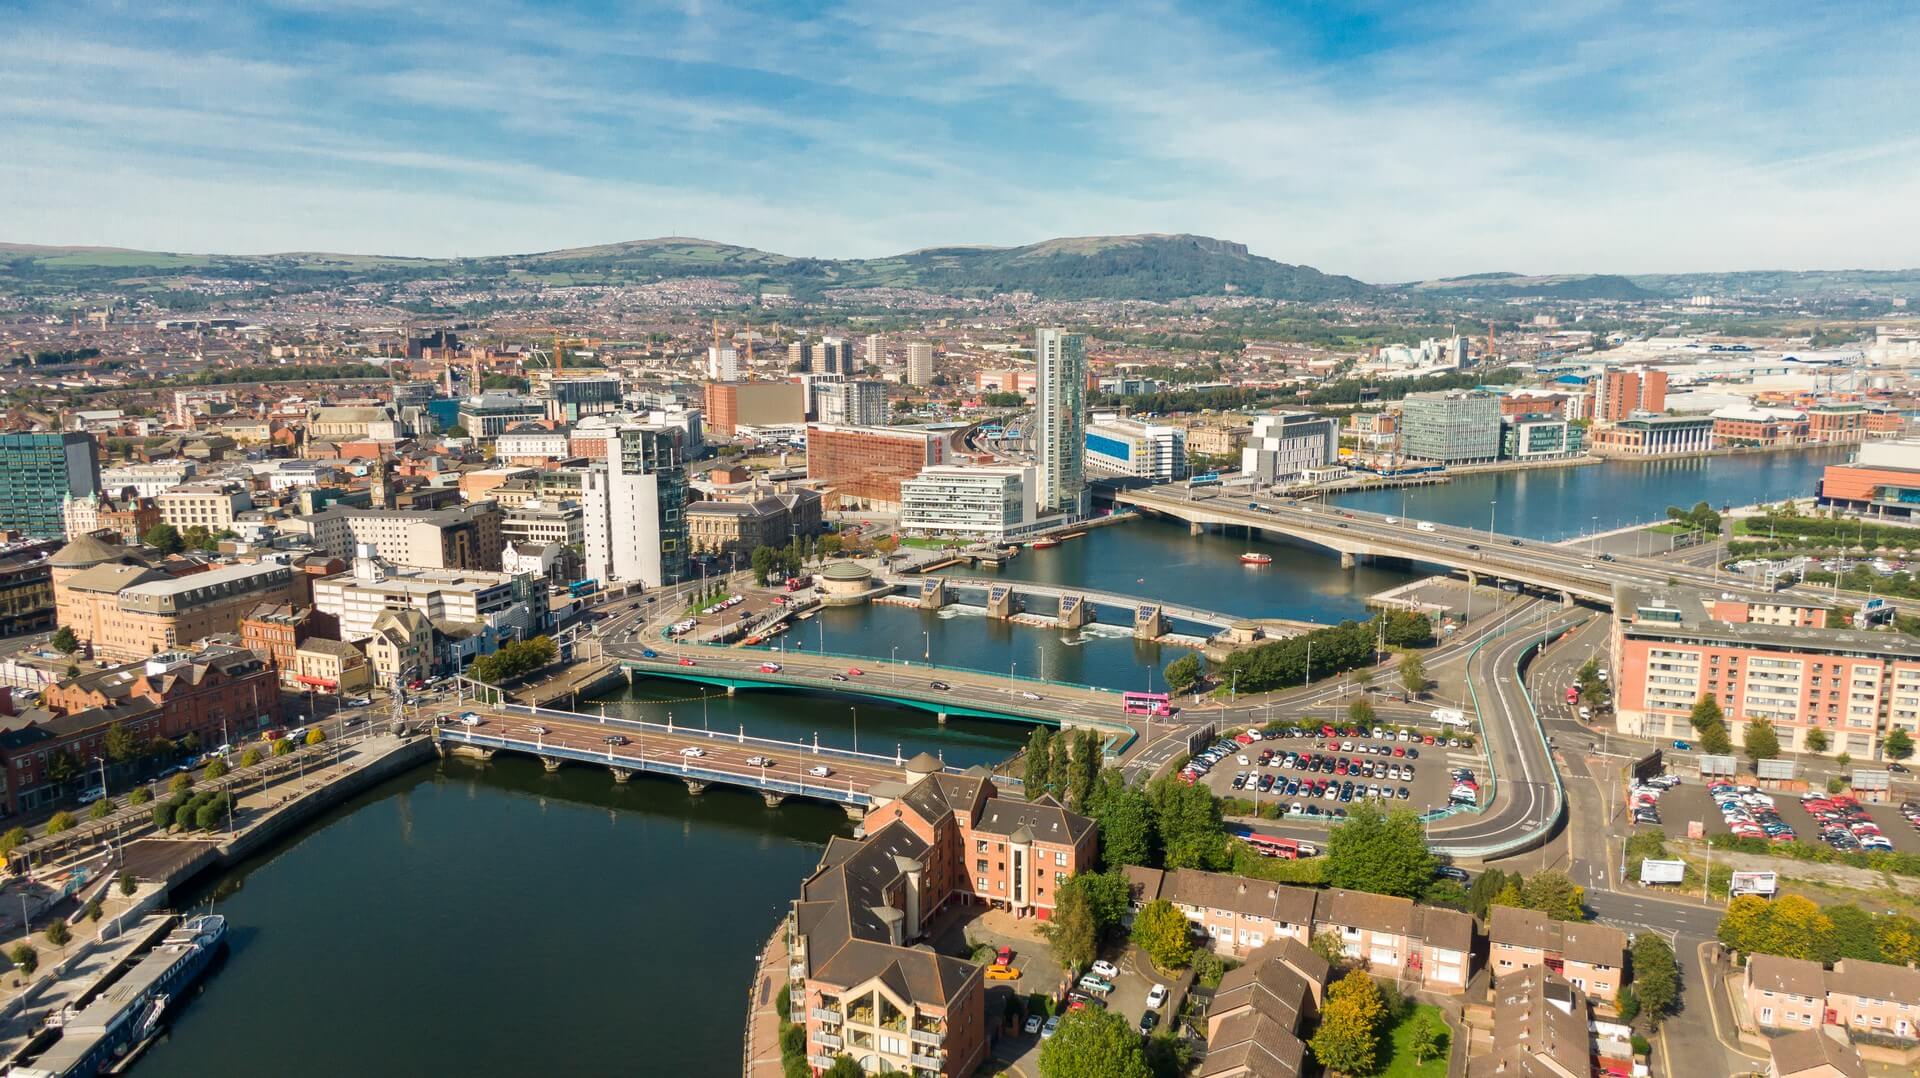 Vue aérienne sur la rivière et les bâtiments du centre ville de Belfast en Irlande du Nord. Photo de drone, vue aérienne de la ville